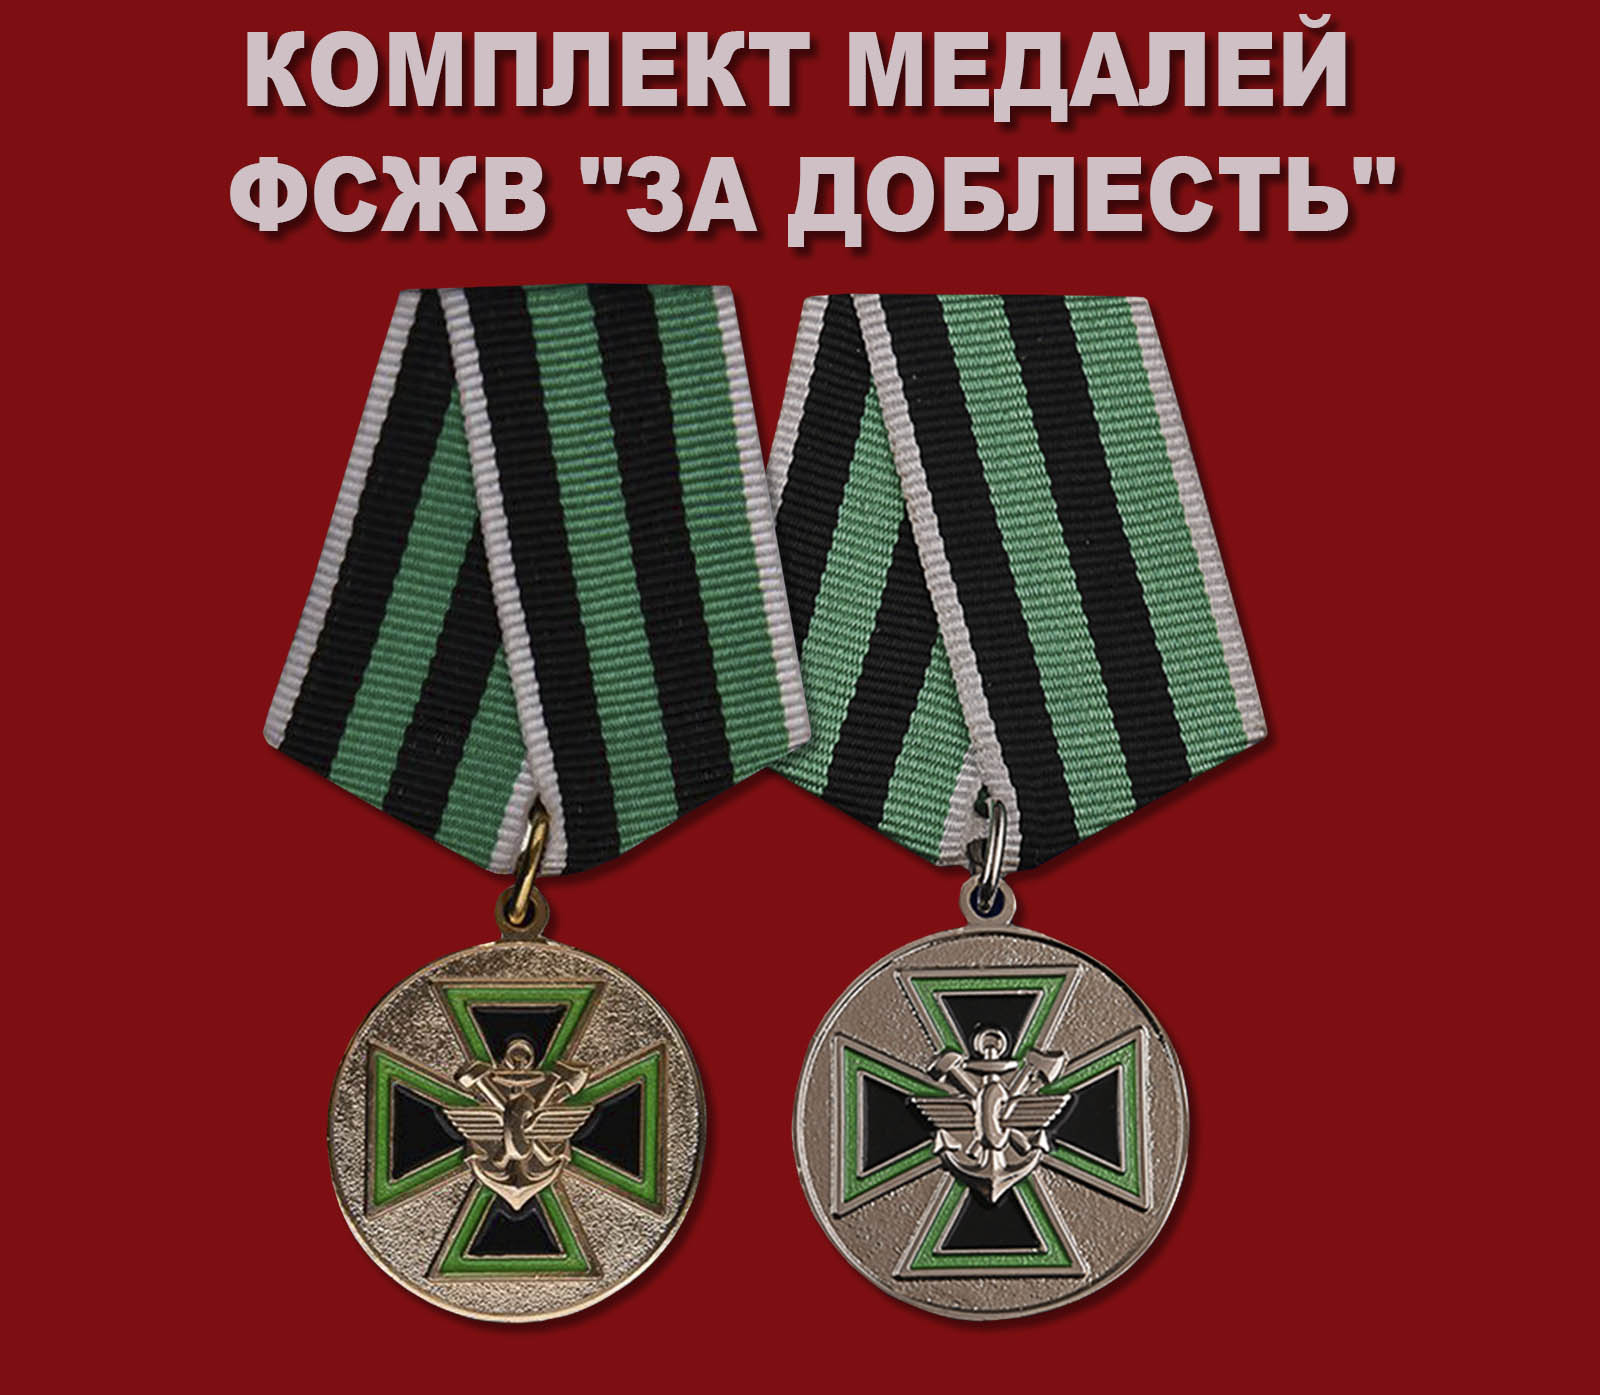 Купить комплект медалей ФСЖВ "За доблесть"